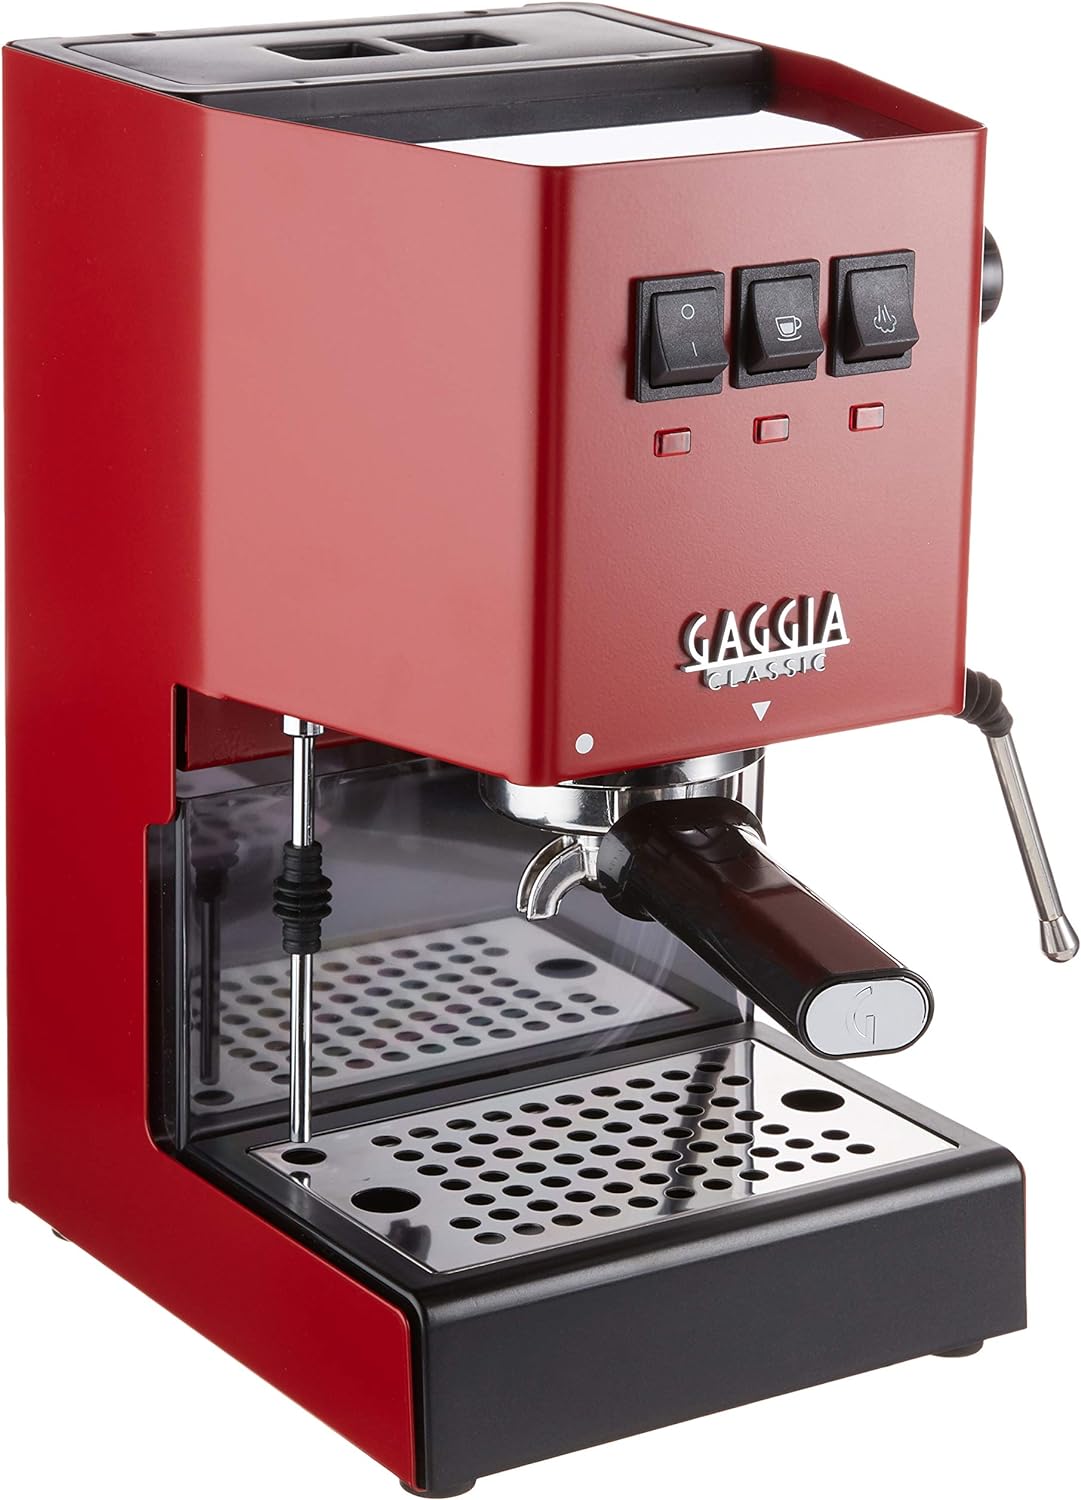 Gaggia Classic Pro Espresso Machine Review